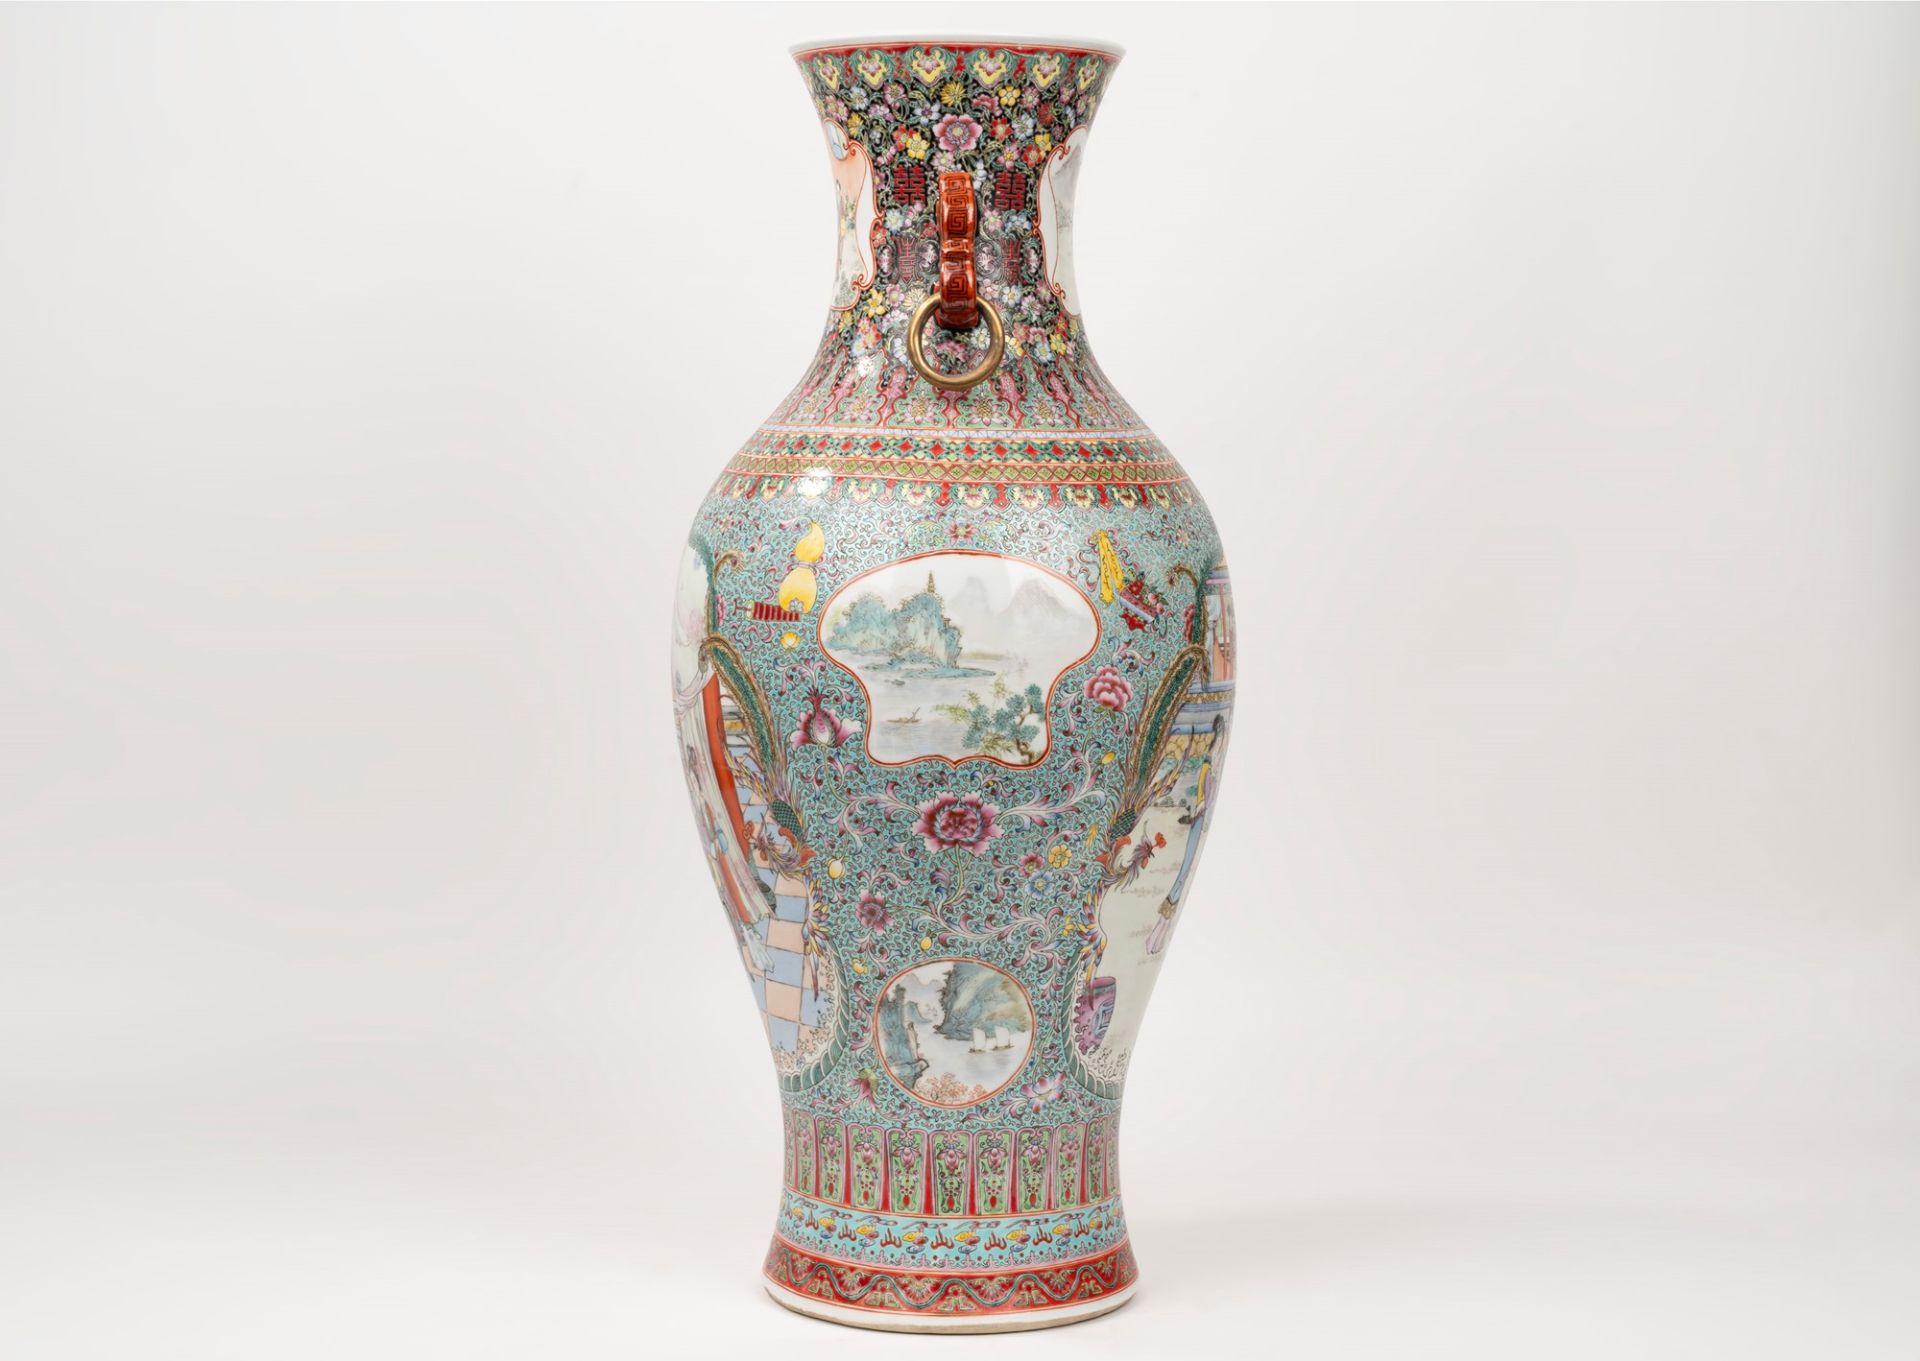 Polychrome porcelain vase, China, 20th century - Image 3 of 6